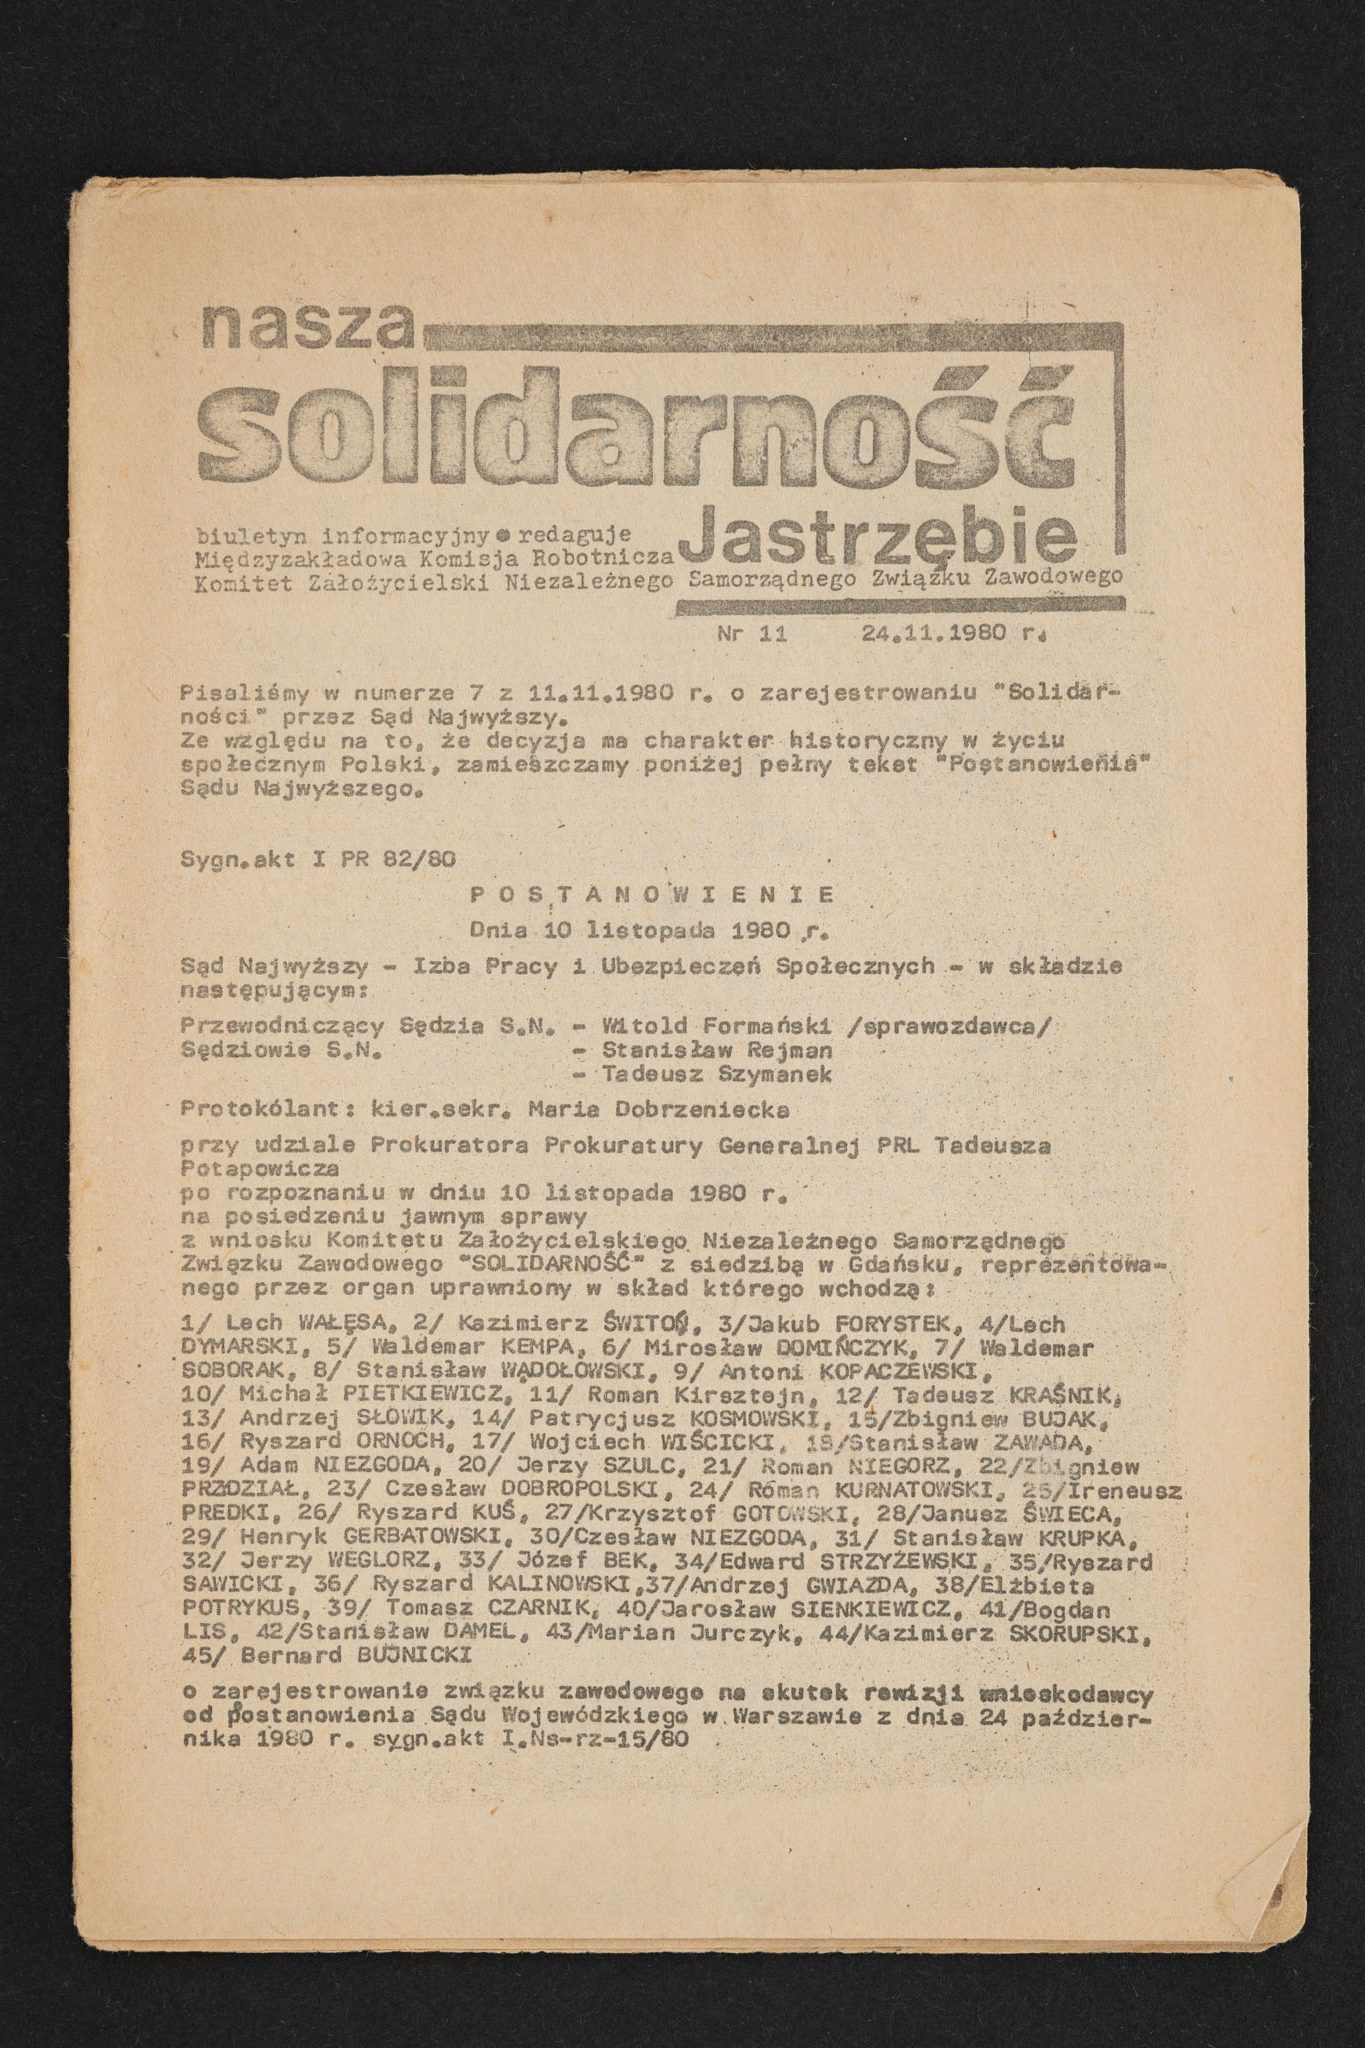 Nasza Solidarność Jastrzębie nr 11 24.11.1980